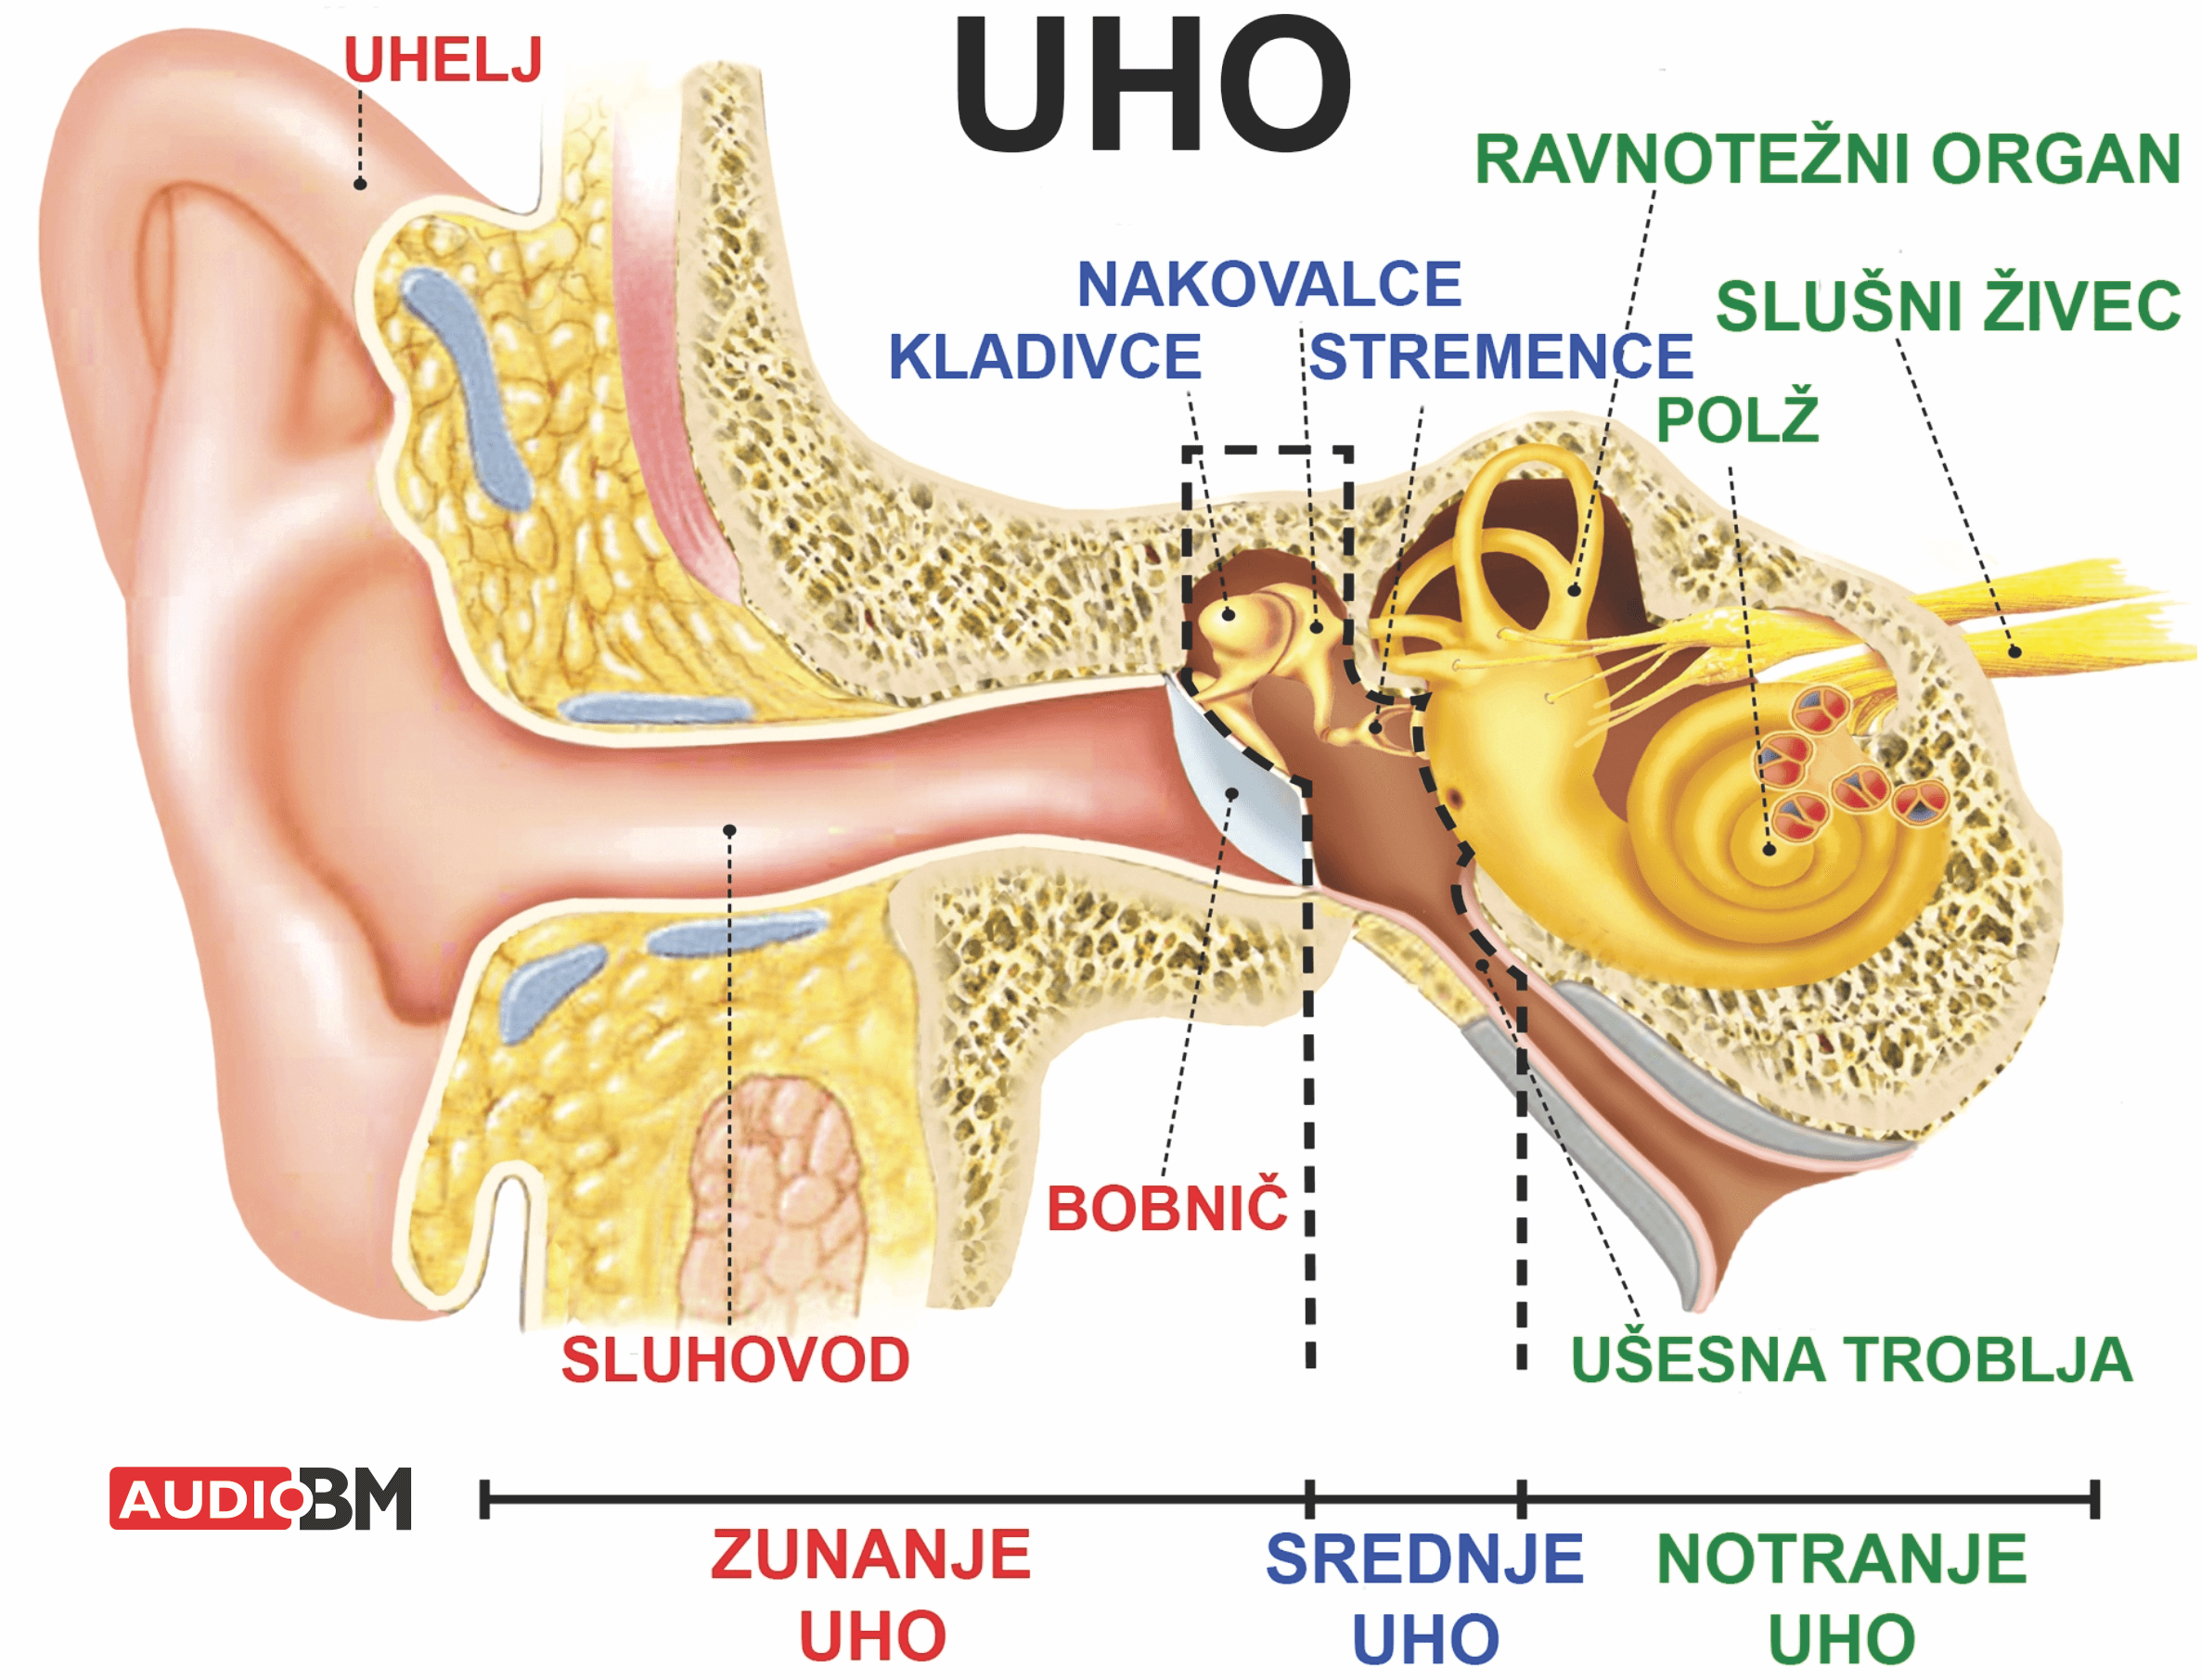 Uho-zgradba-delovanje-sluha-zunanje-srednje-notranje-ravnotezni-organ-audio-bm-slusni-aparati-svetovanje-test